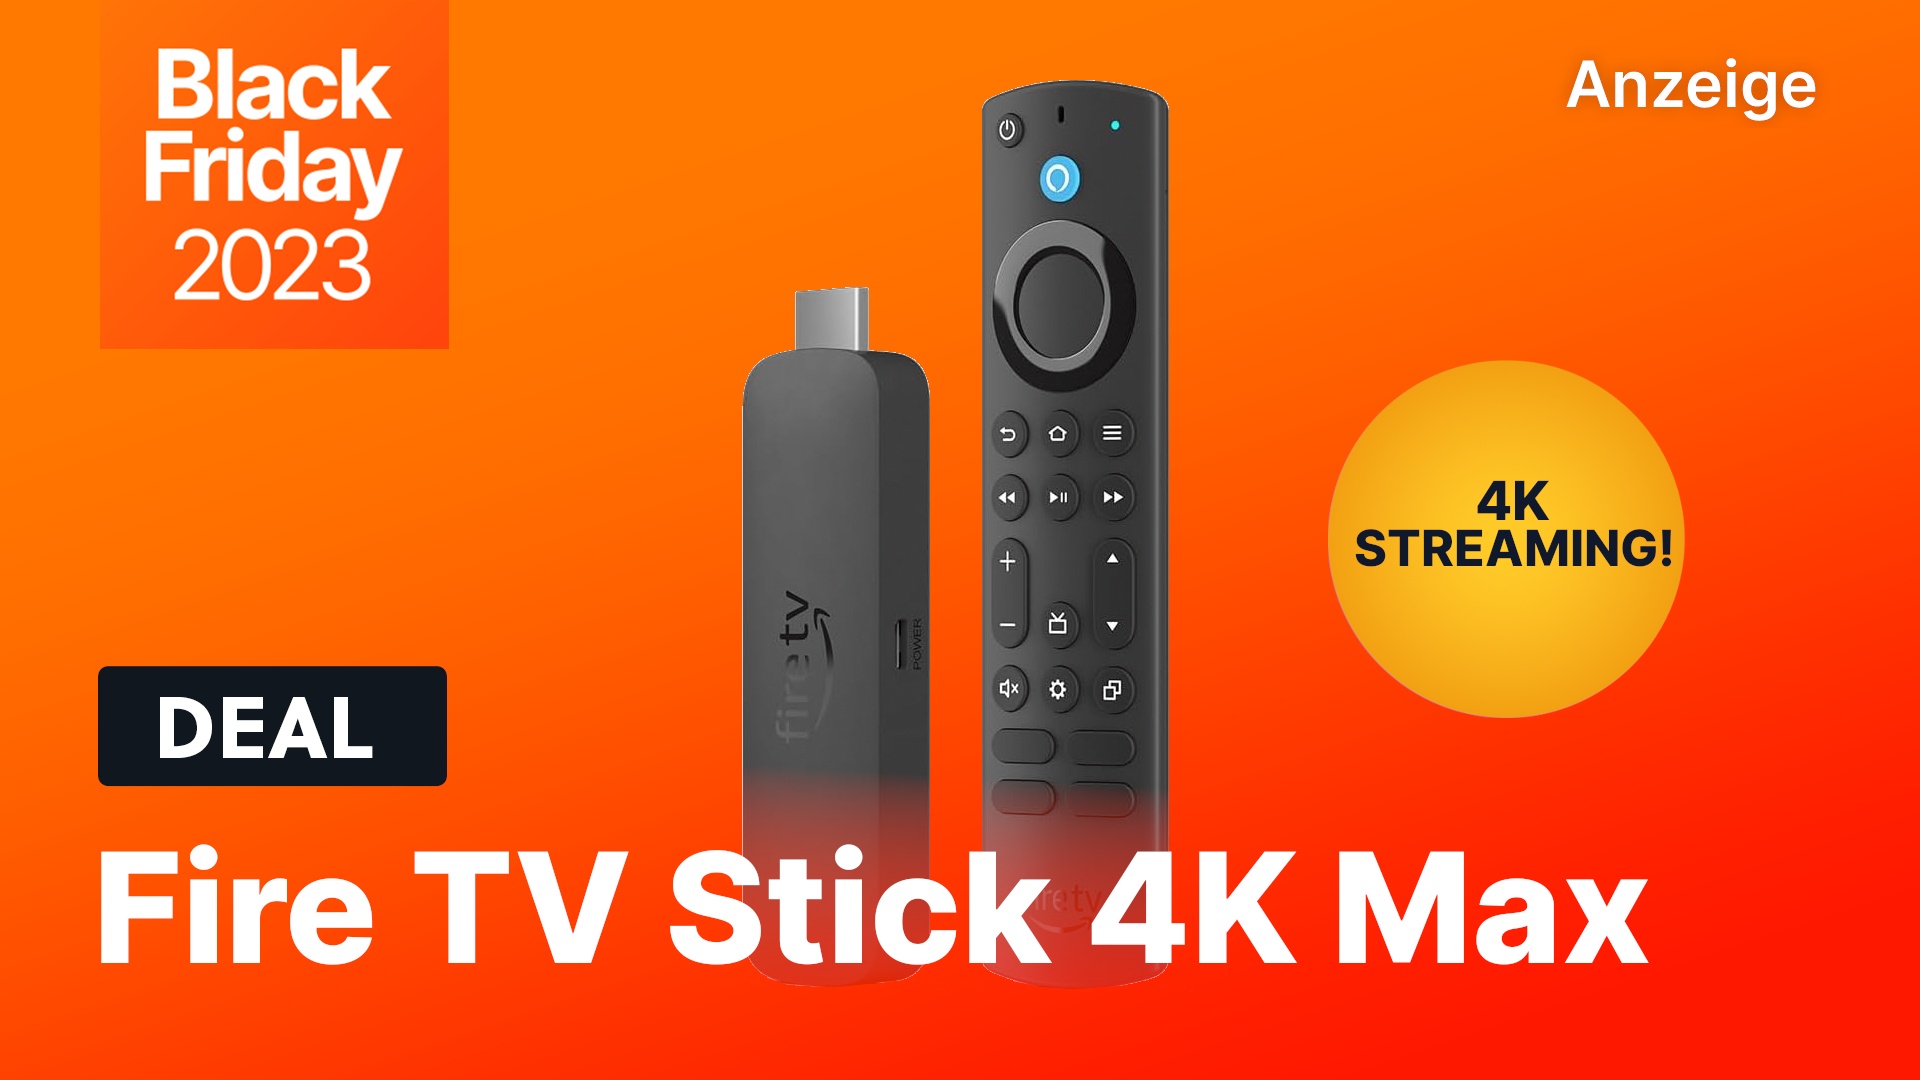 Dank dem Fire TV Stick 4K Max ist ein Smart TV verdammt günstig!